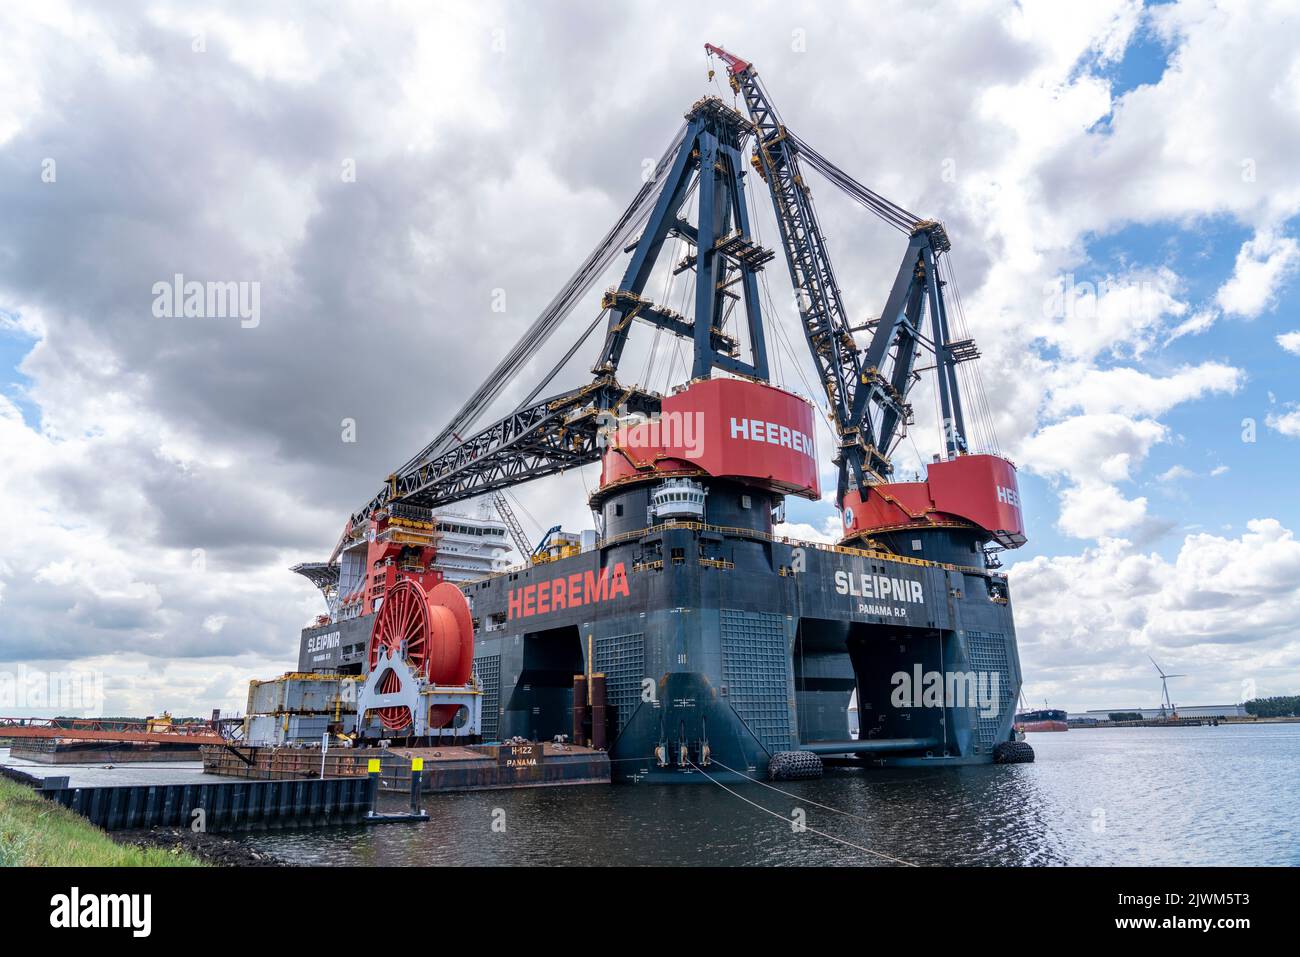 Petroleumhaven, der größte Schwimmkran der Welt, Heerema Sleipnir, aus Rotterdam, Niederlande, Stockfoto